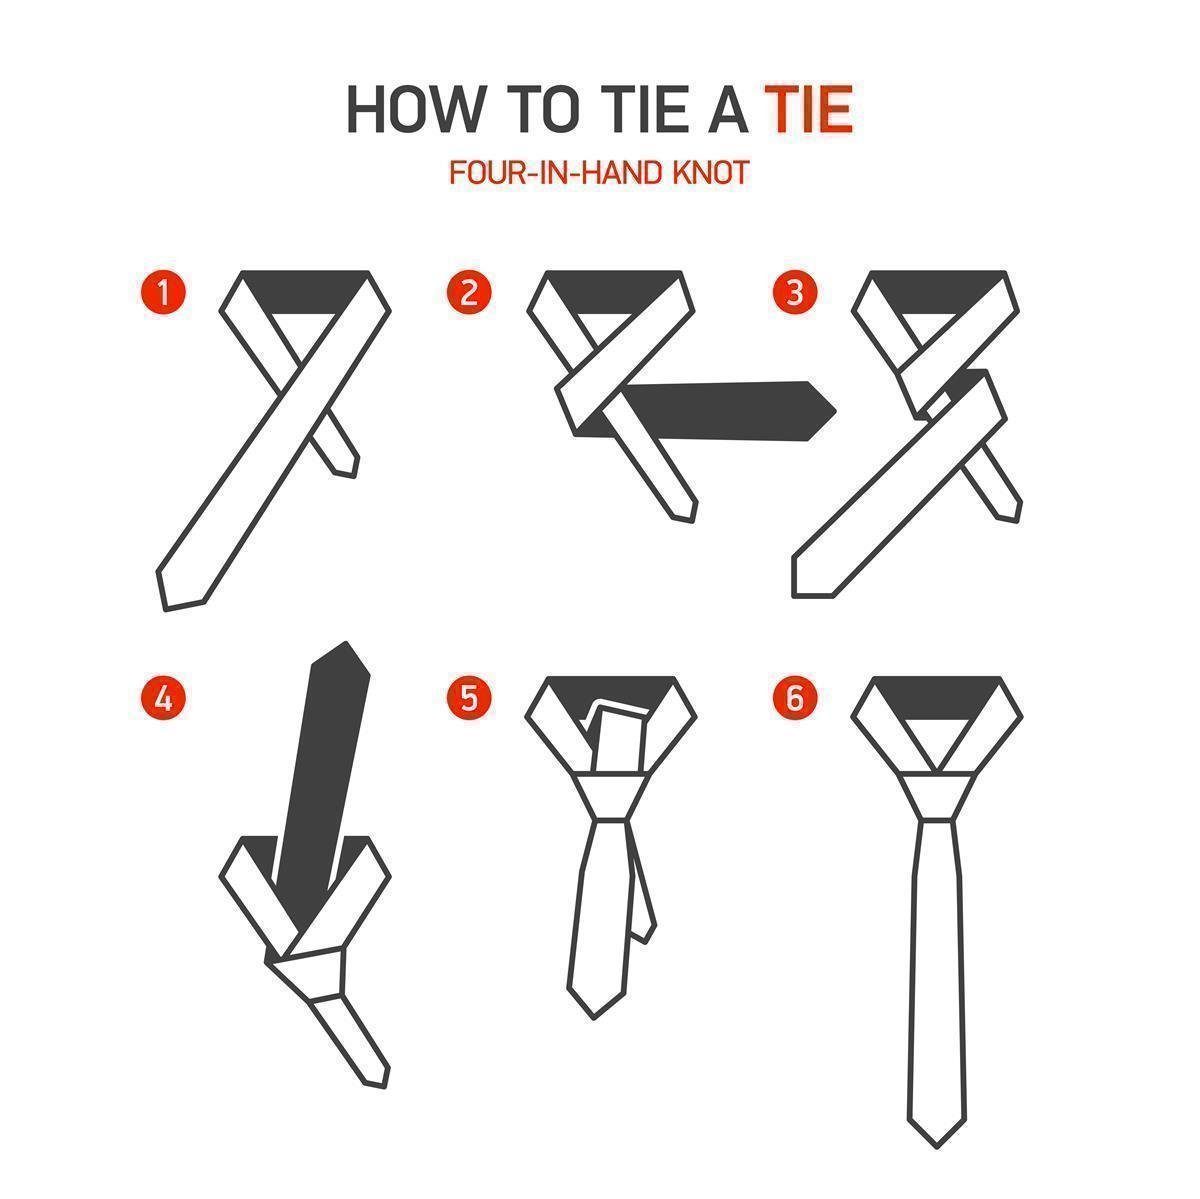 DonDon Krawatte Herren Krawatte 6 oder Veranstaltungen orange-dunkelblau Baumwolle, 1-St., Karos (Packung, gestreift, Krawatte) kariert 1x cm mit für festliche Büro Streifen oder oder